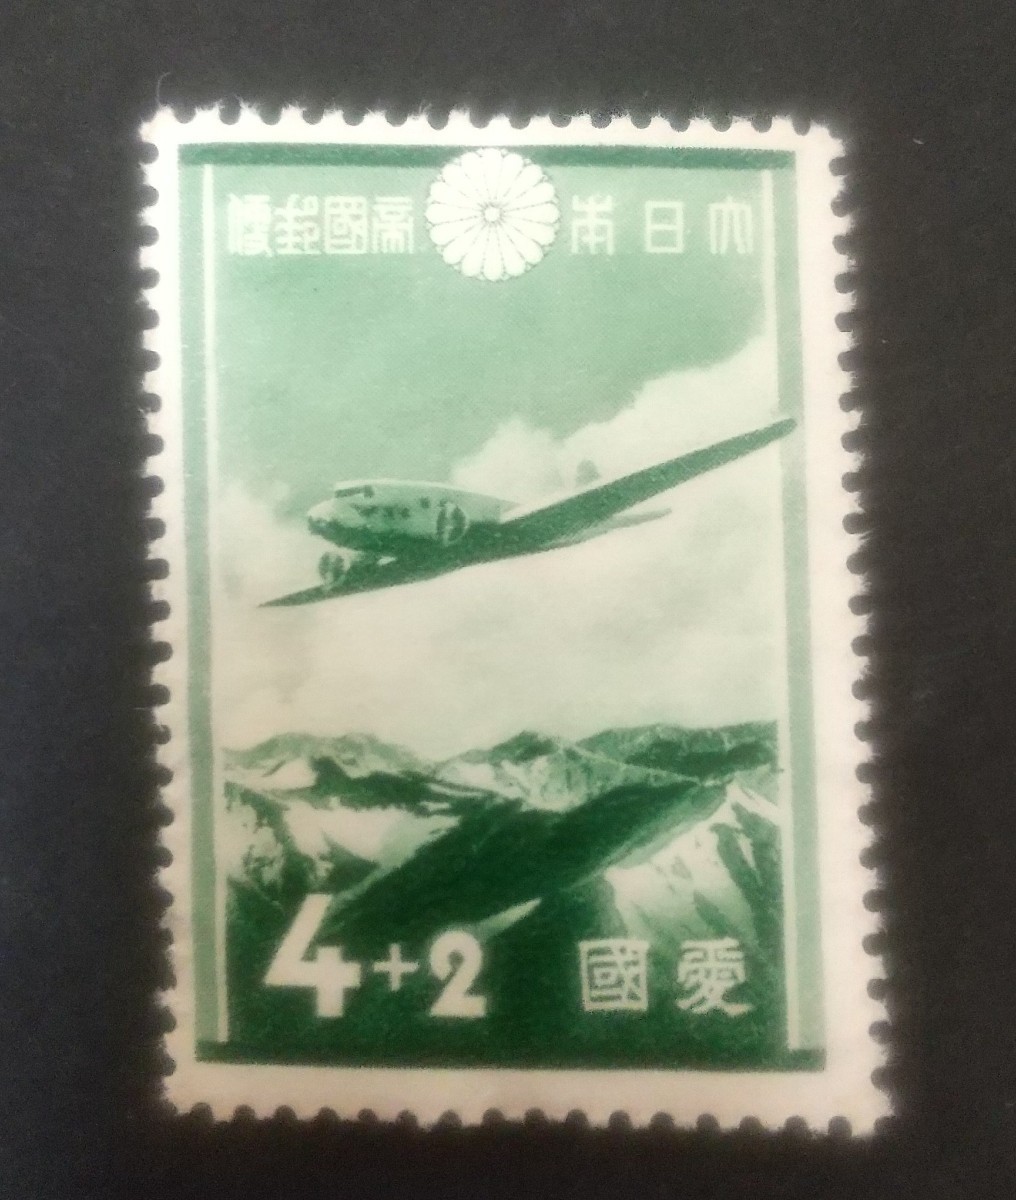 記念切手 愛国切手 昭和12年 1937 日本アルプスの上空を飛ぶダグラスDC-2型機 未使用品 当時物 (ST-TG)_画像1